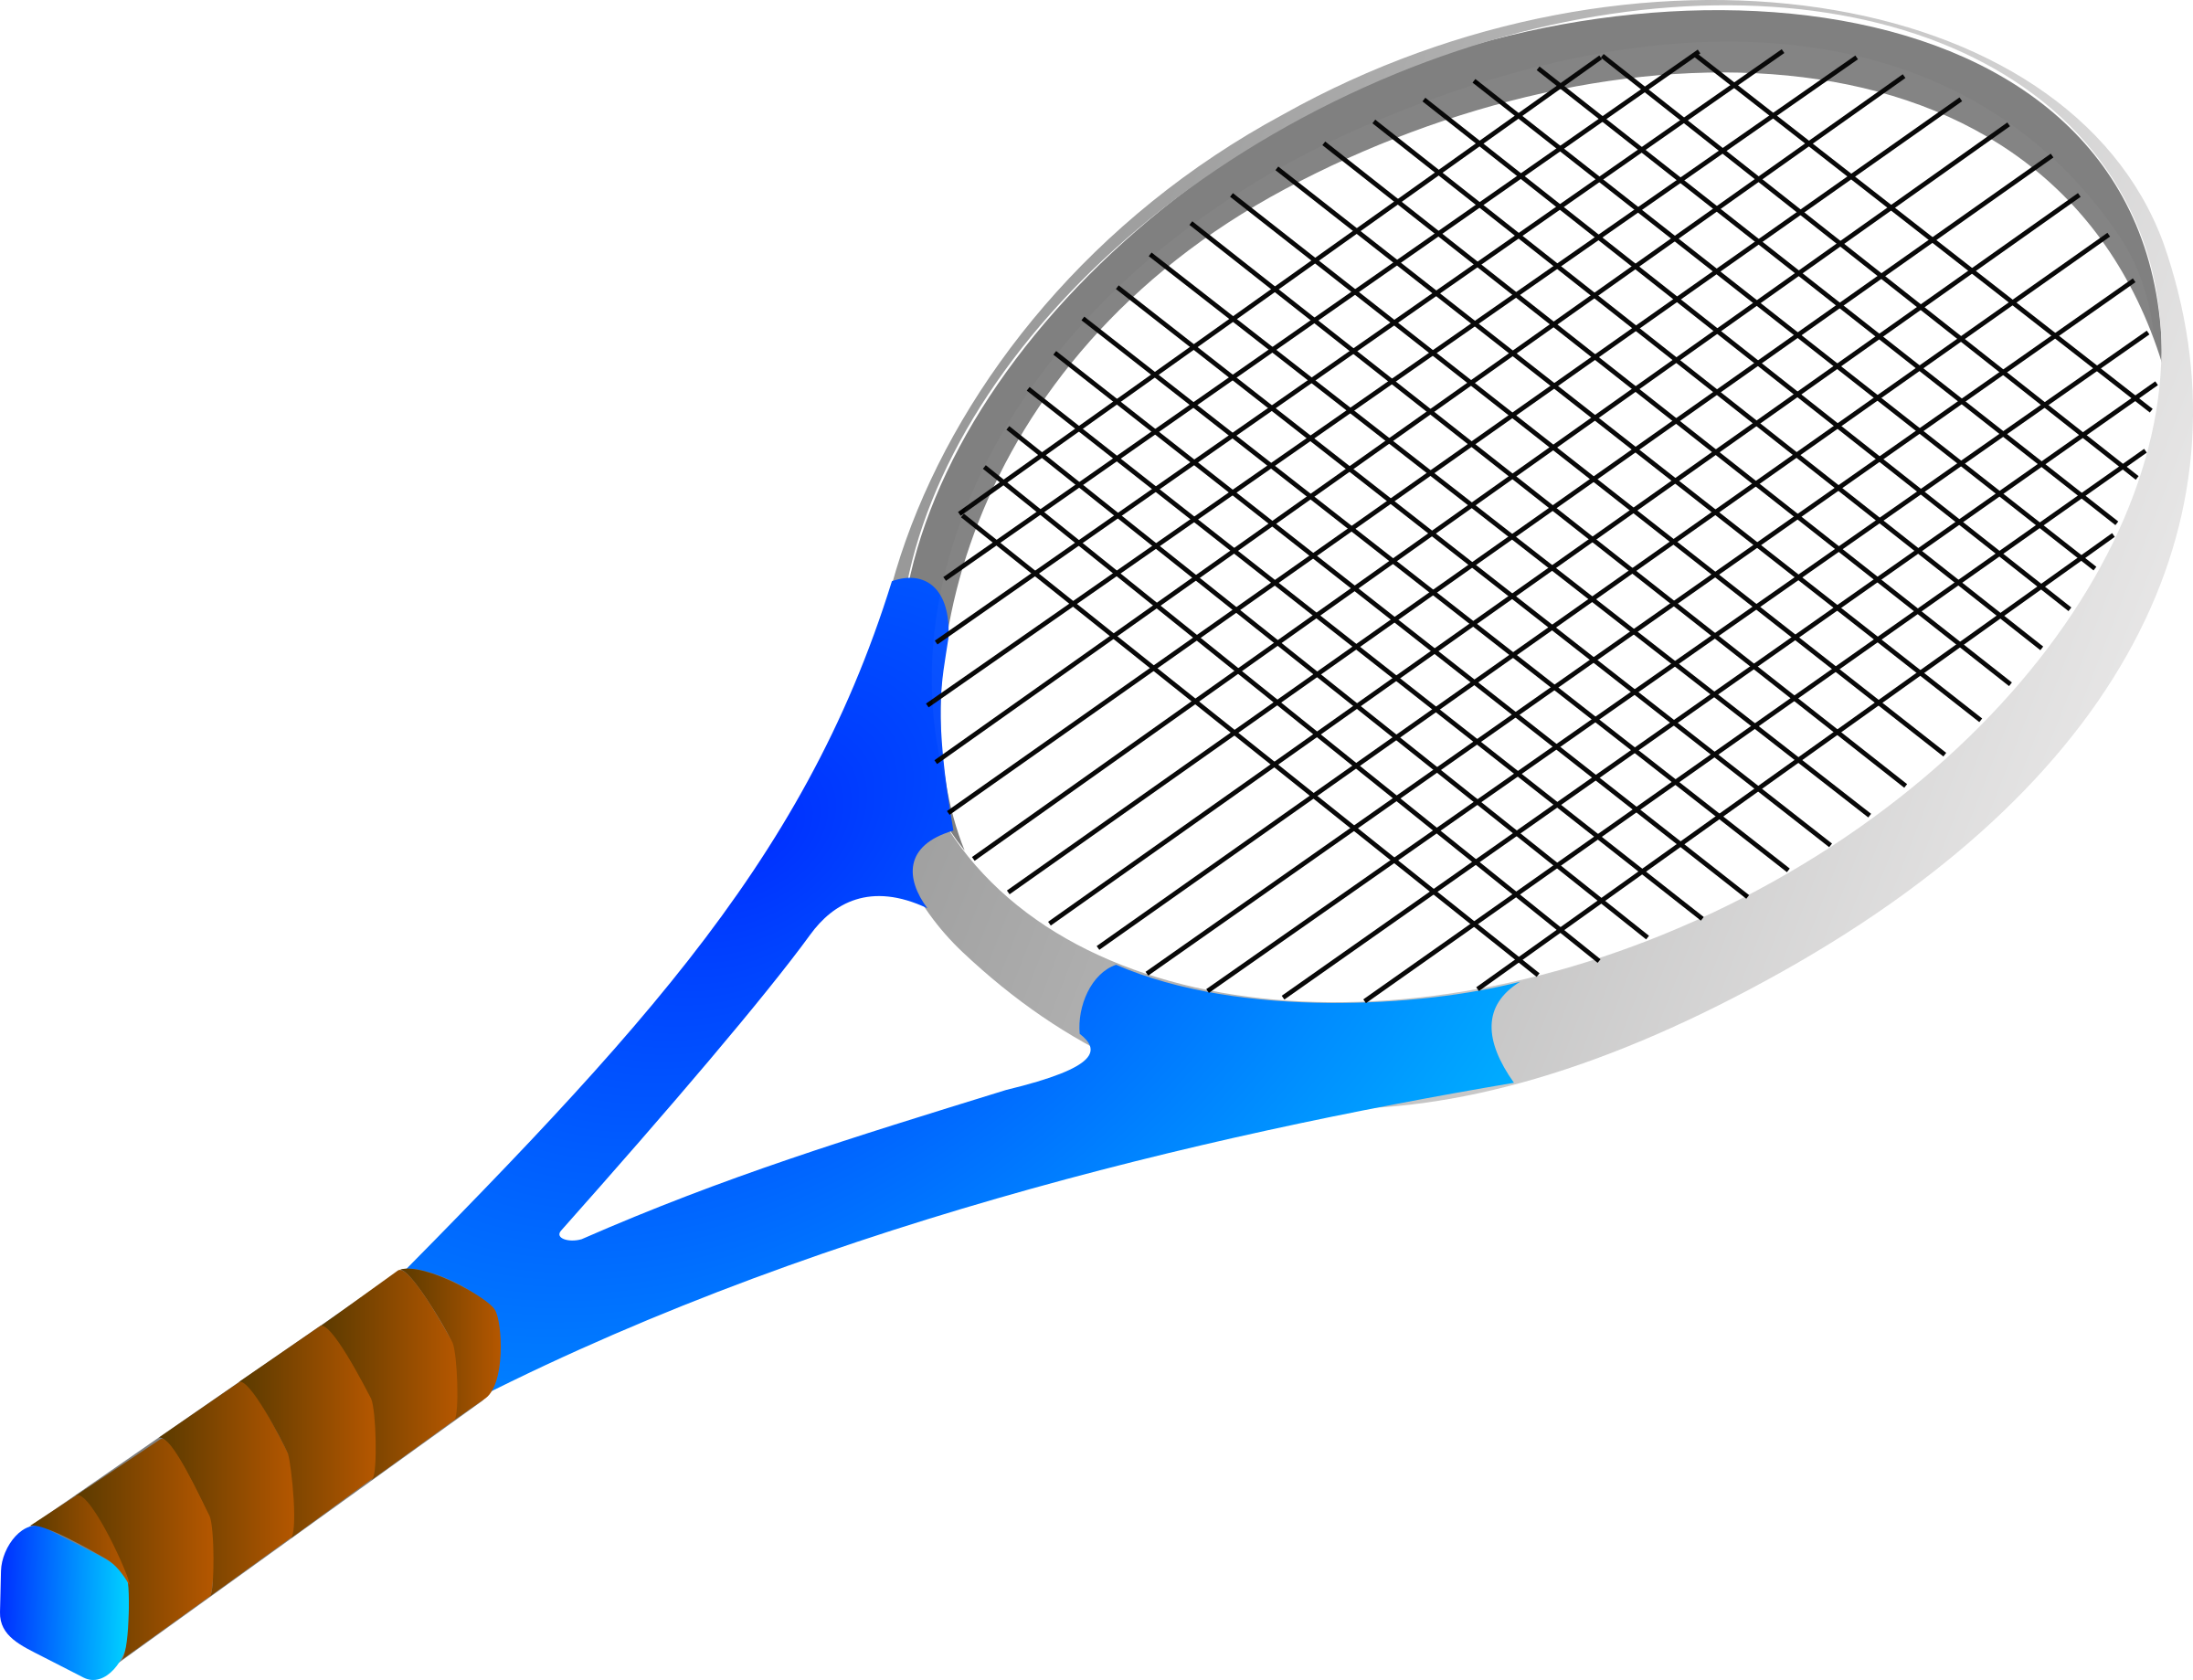 网球拍